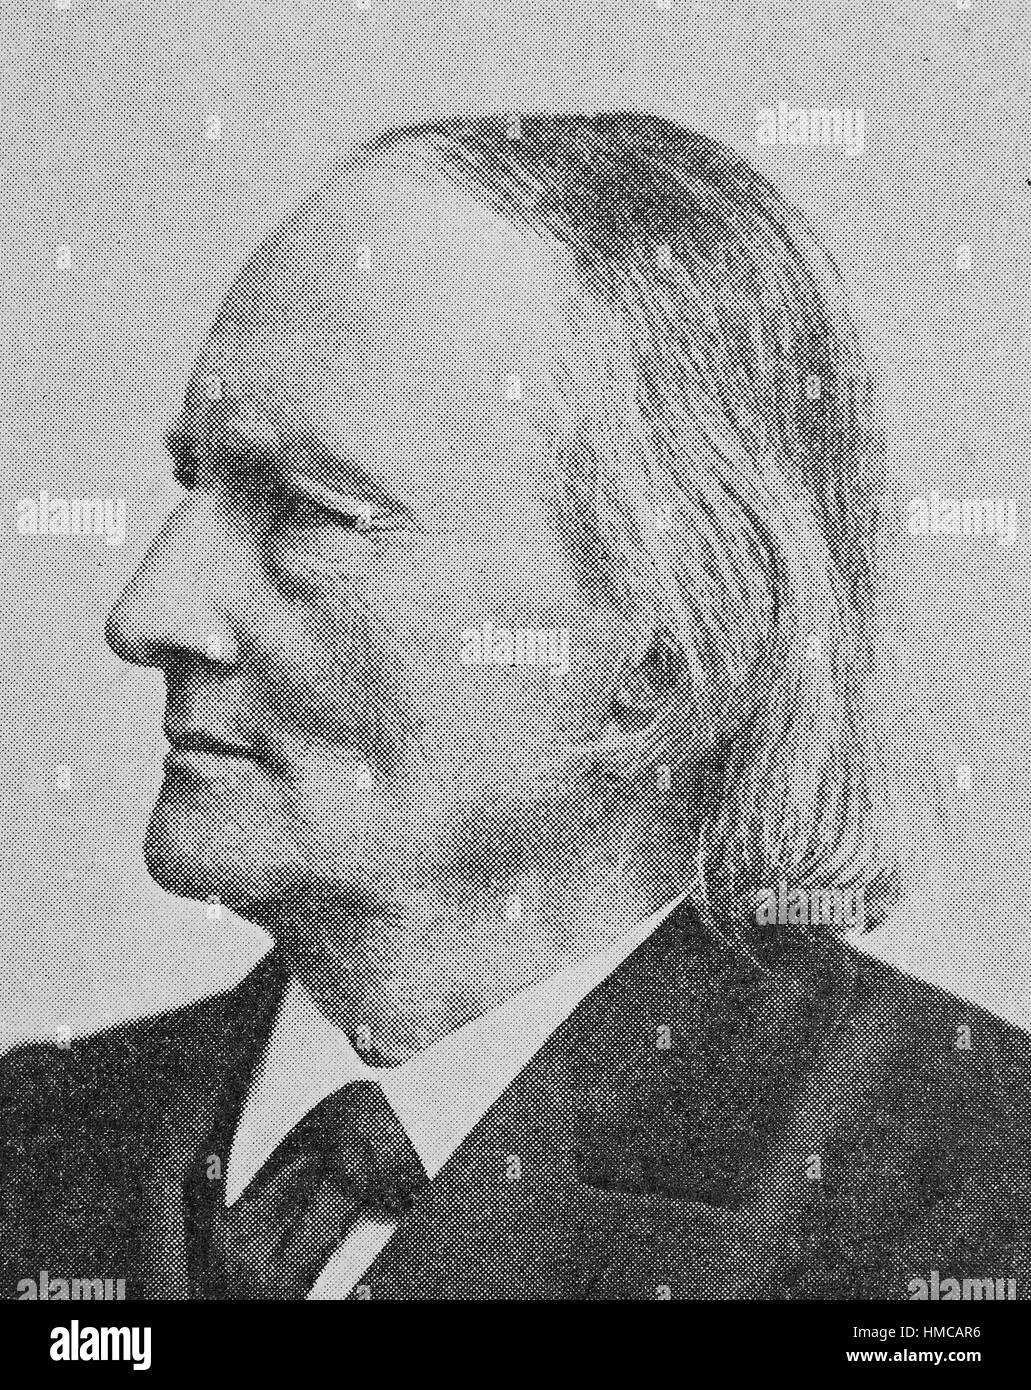 Karl Gotthelf Jakob Weinhold, 26 octobre 1823, à Reichenbach - 15 août 1901, à Bad Nauheim, était un linguiste et folkloriste allemand spécialisé dans les études allemandes, photo ou illustration, publié en 1892, l'amélioration numérique Banque D'Images